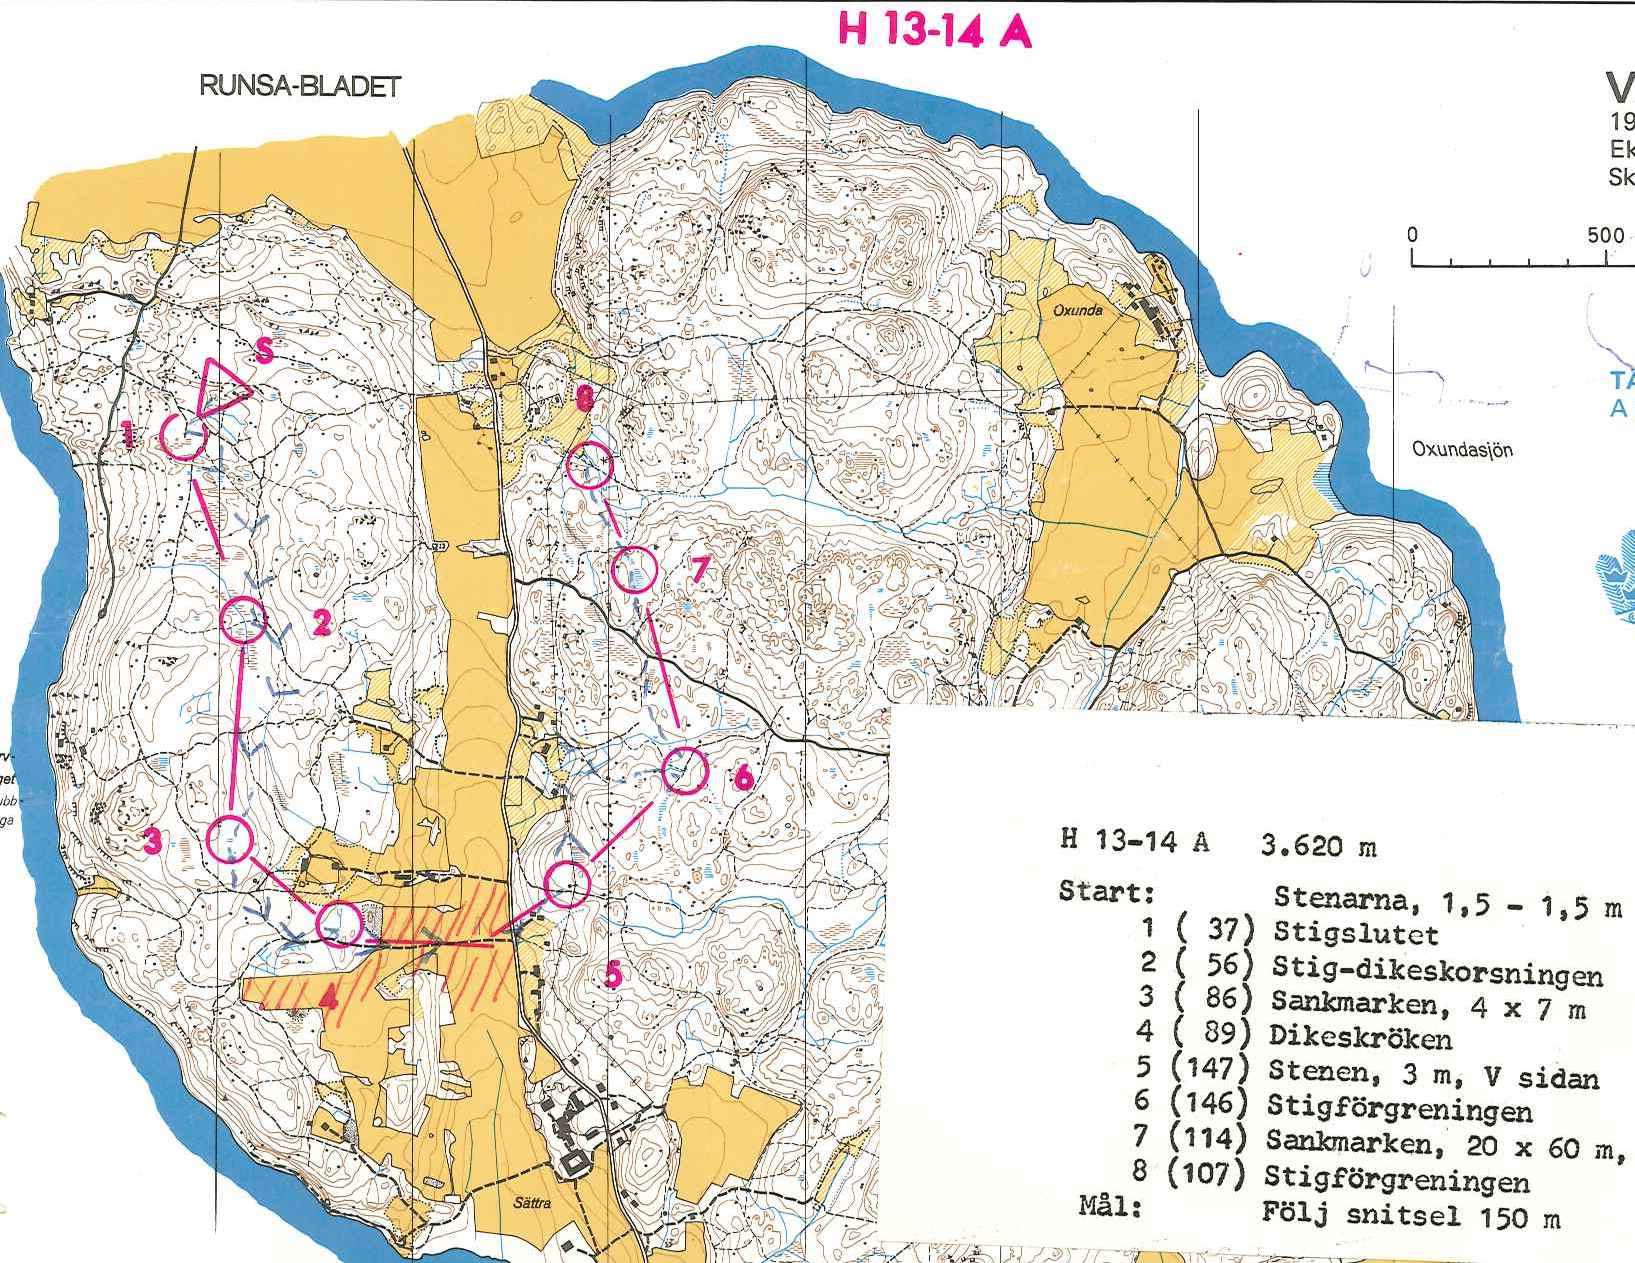 Väsby (08-09-1974)